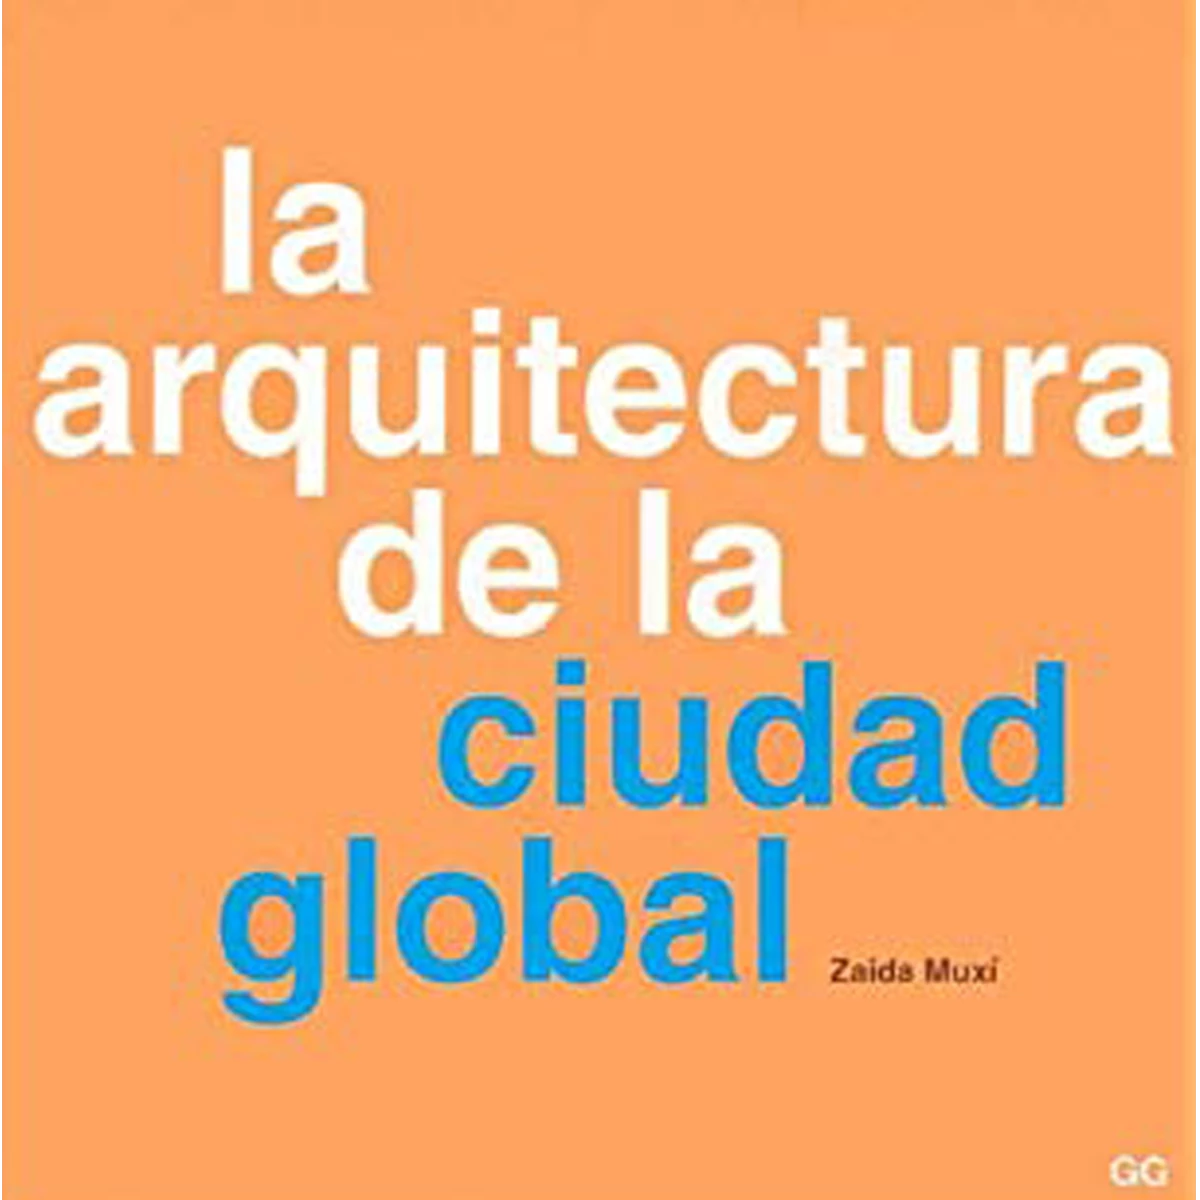 La arquitectura de la ciudad global